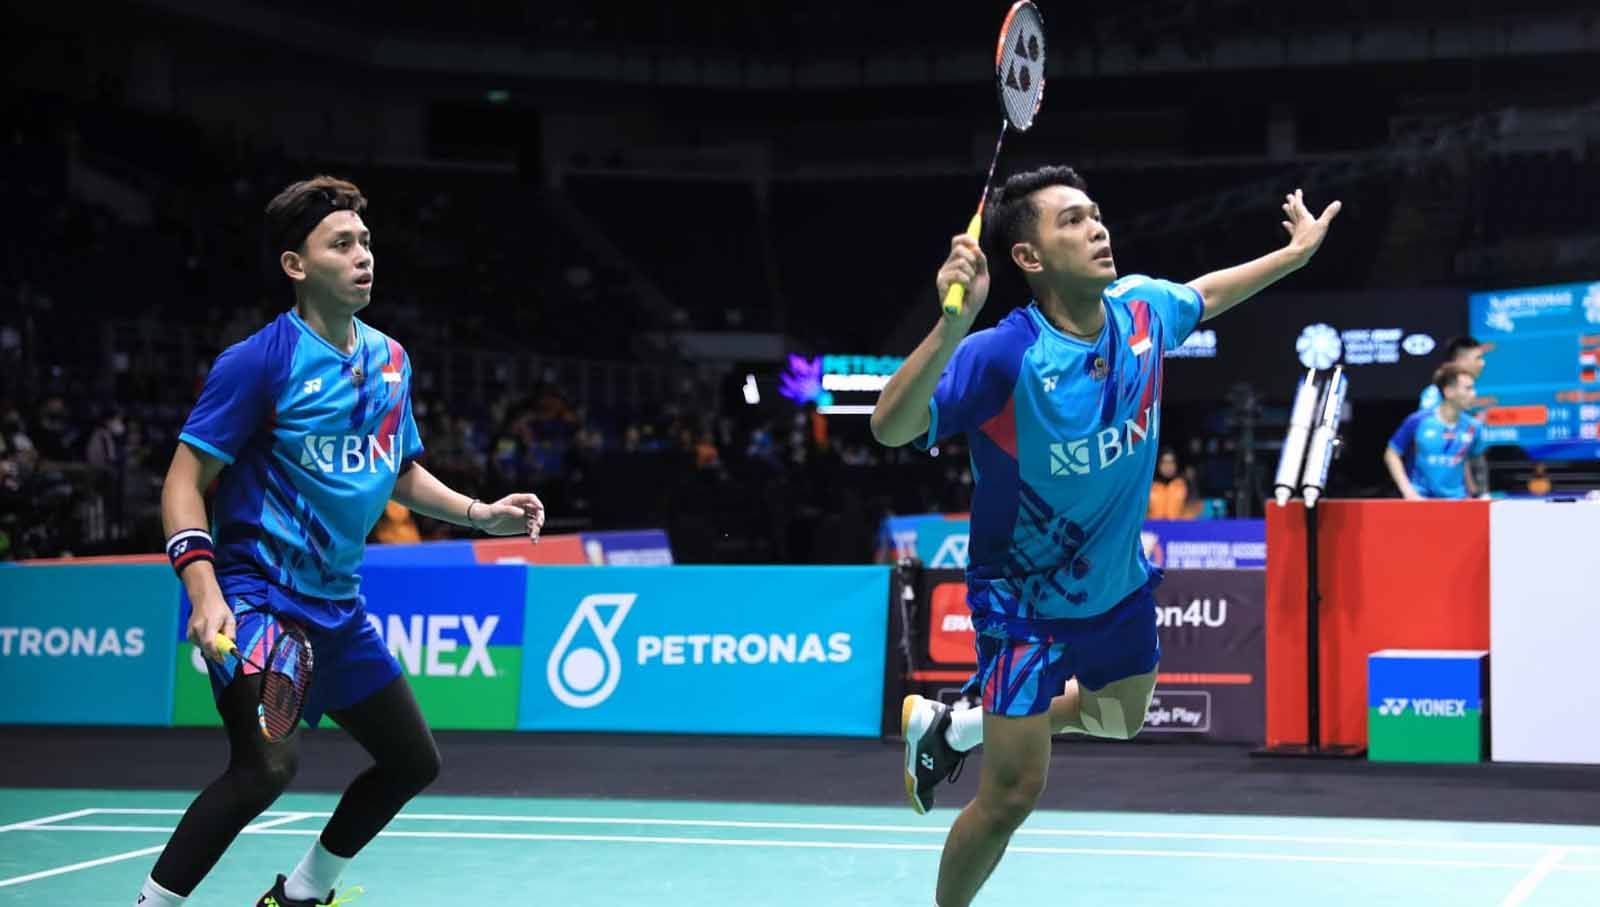 Ganda putra Indonesia, Fajar Alfian/Rian Ardianto, akan mewaspadai kekuatan yang dimiliki Kang Min Hyuk/Seo Seung Jae di semifinal Malaysia Open 2023.  (Foto: PBSI) Copyright: © PBSI